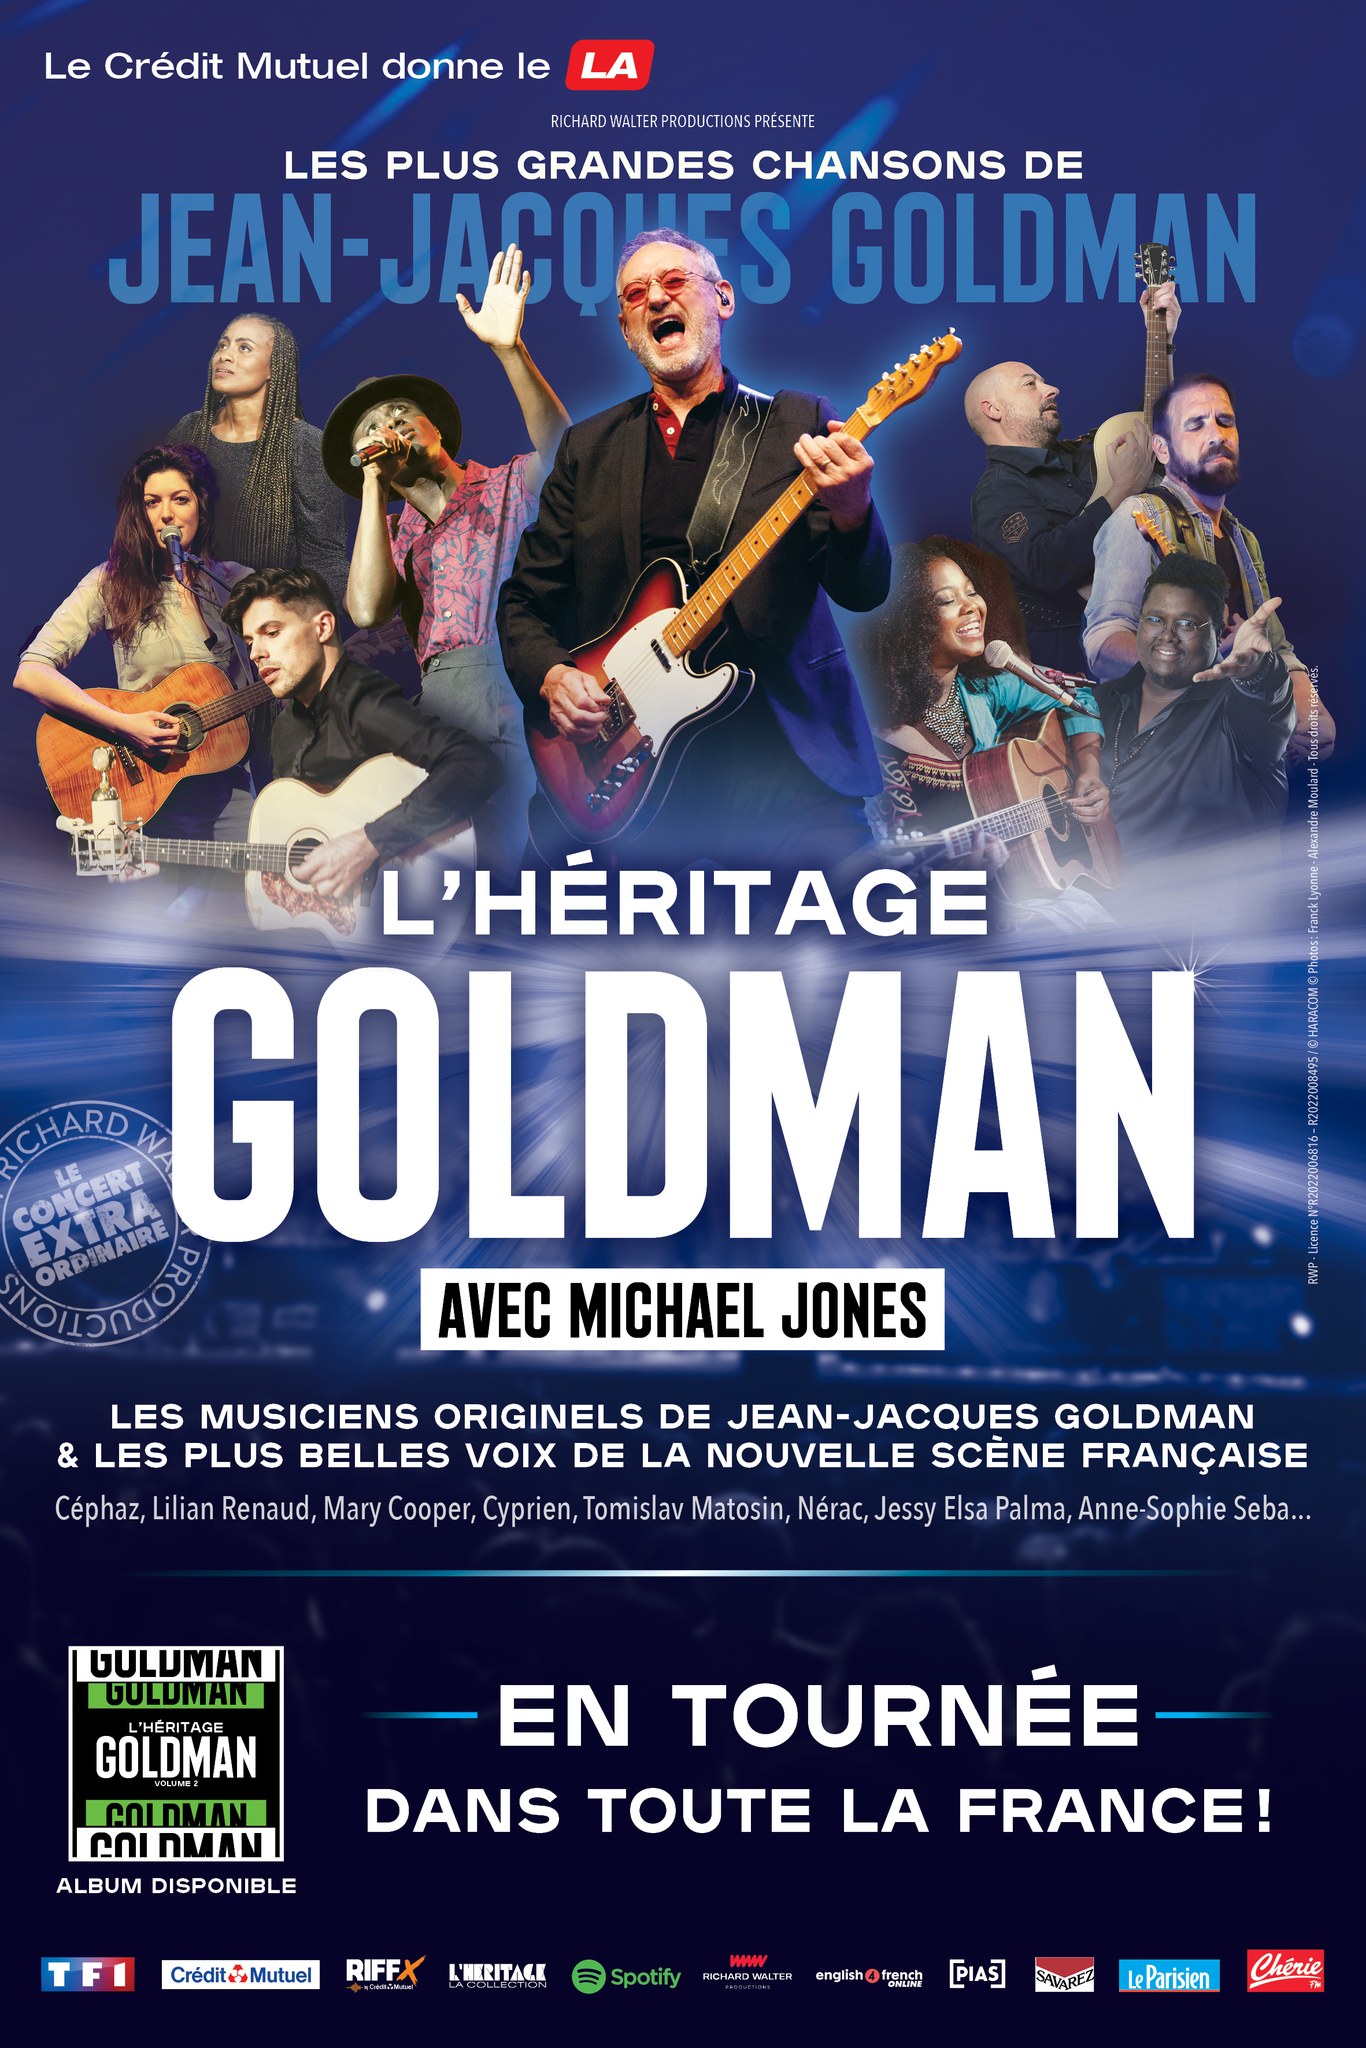 Heritage Goldman in der M.a.ch 36 Tickets